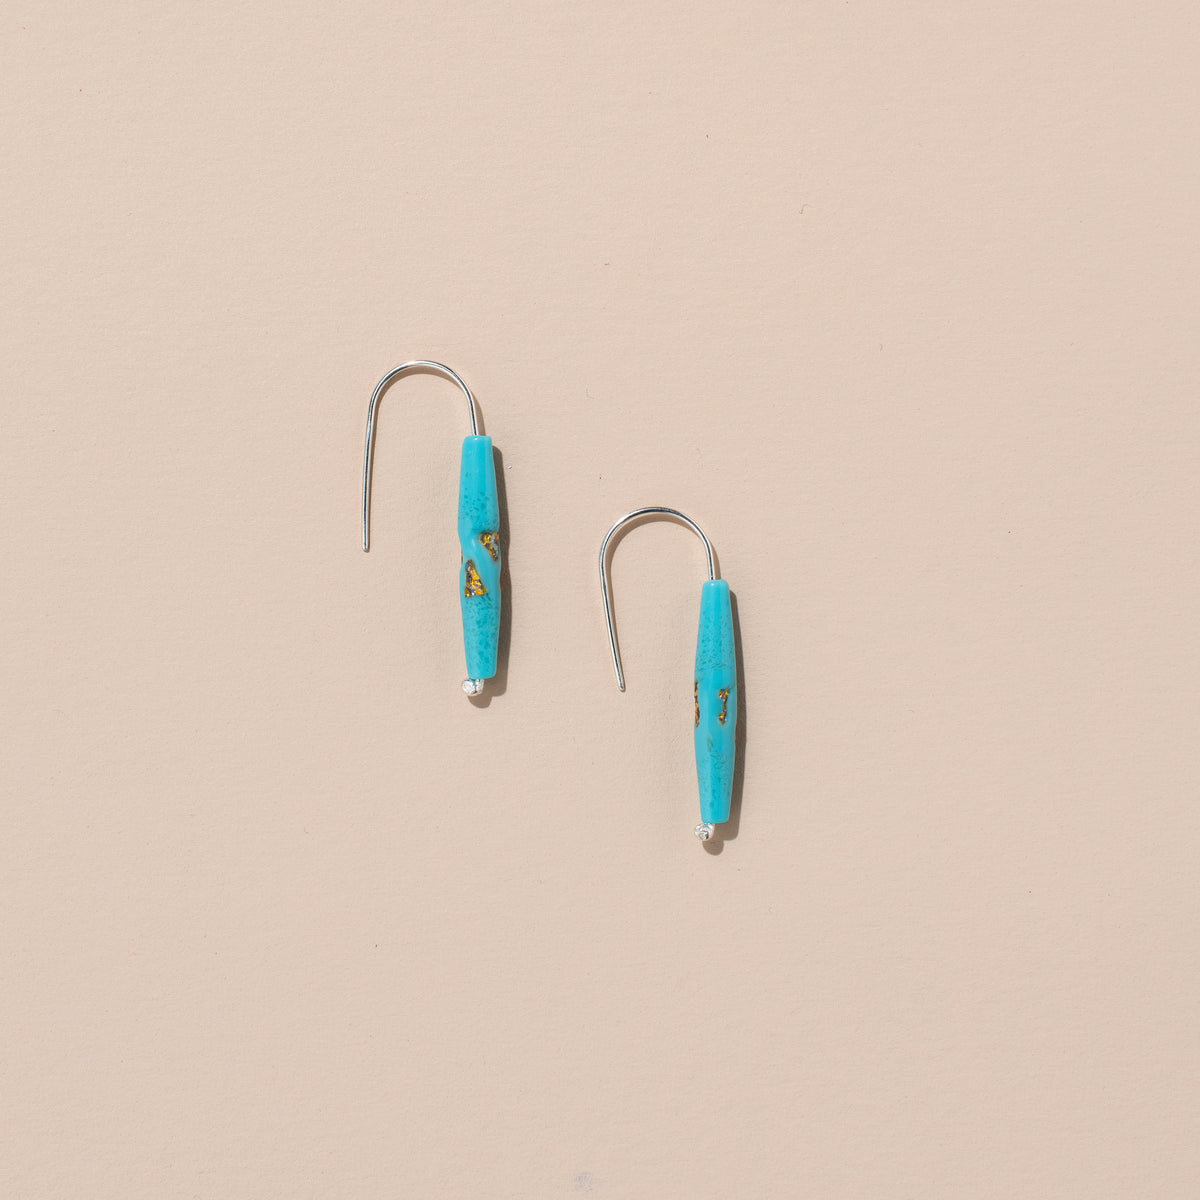 Japanese Glass Bead Earrings (blue)